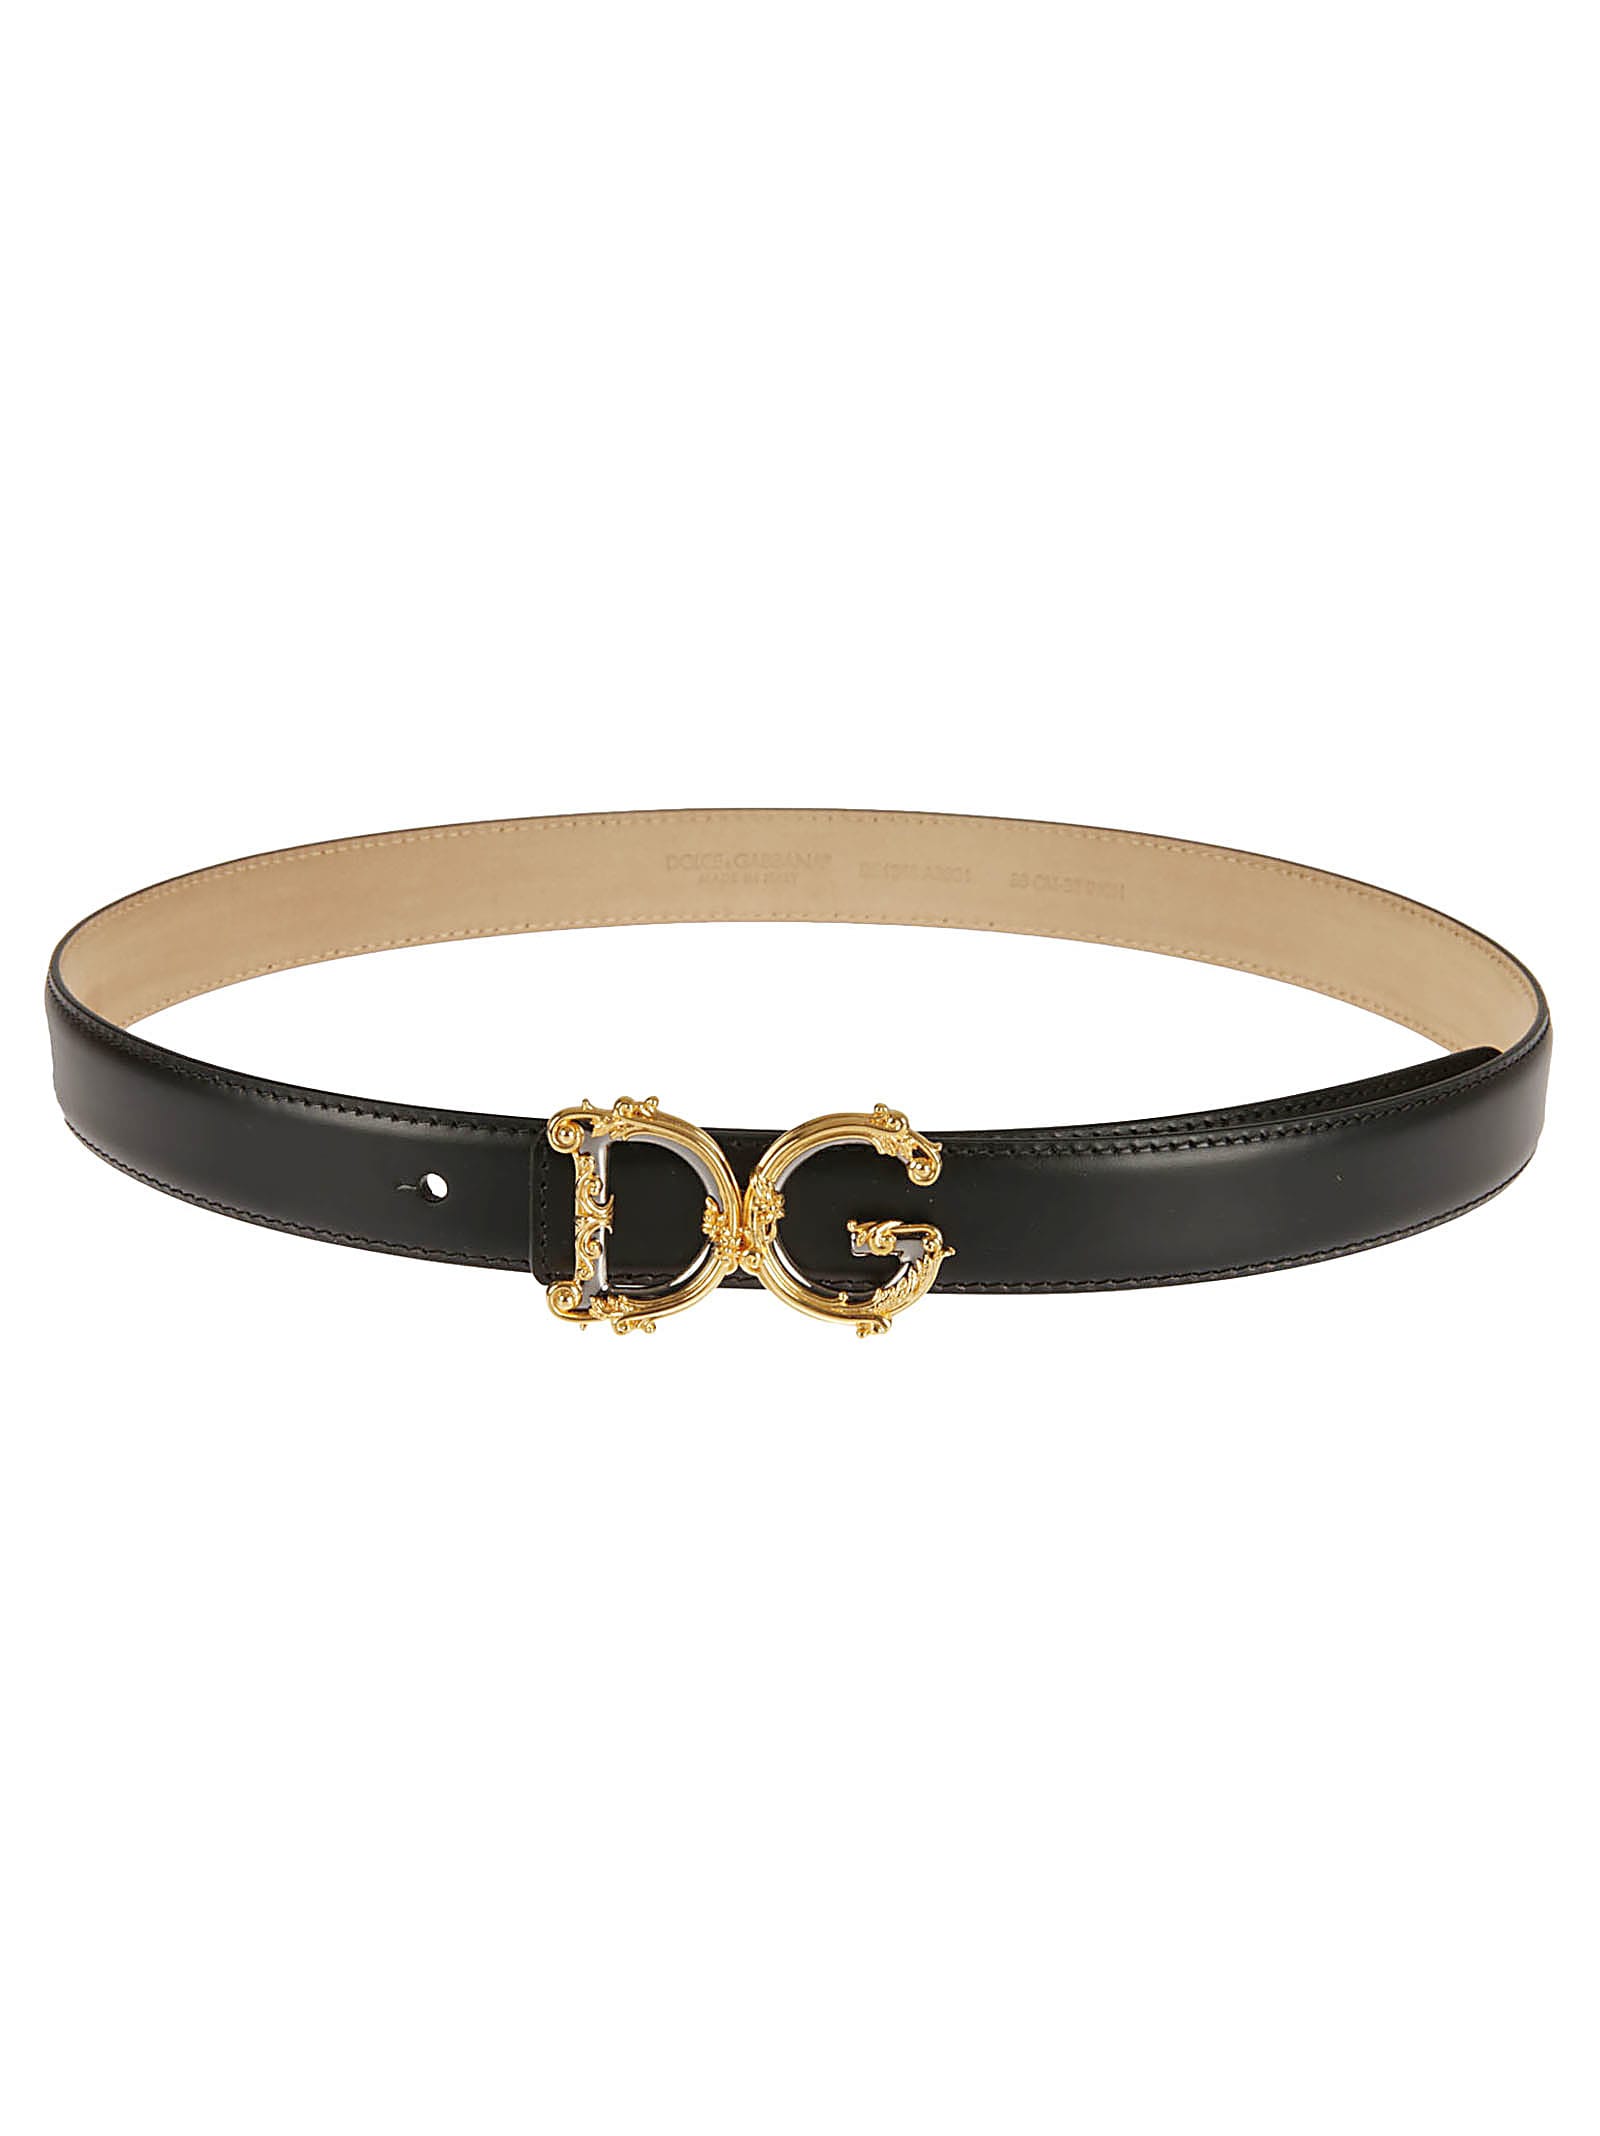 Dolce & Gabbana Barocco Buckled Logo Belt